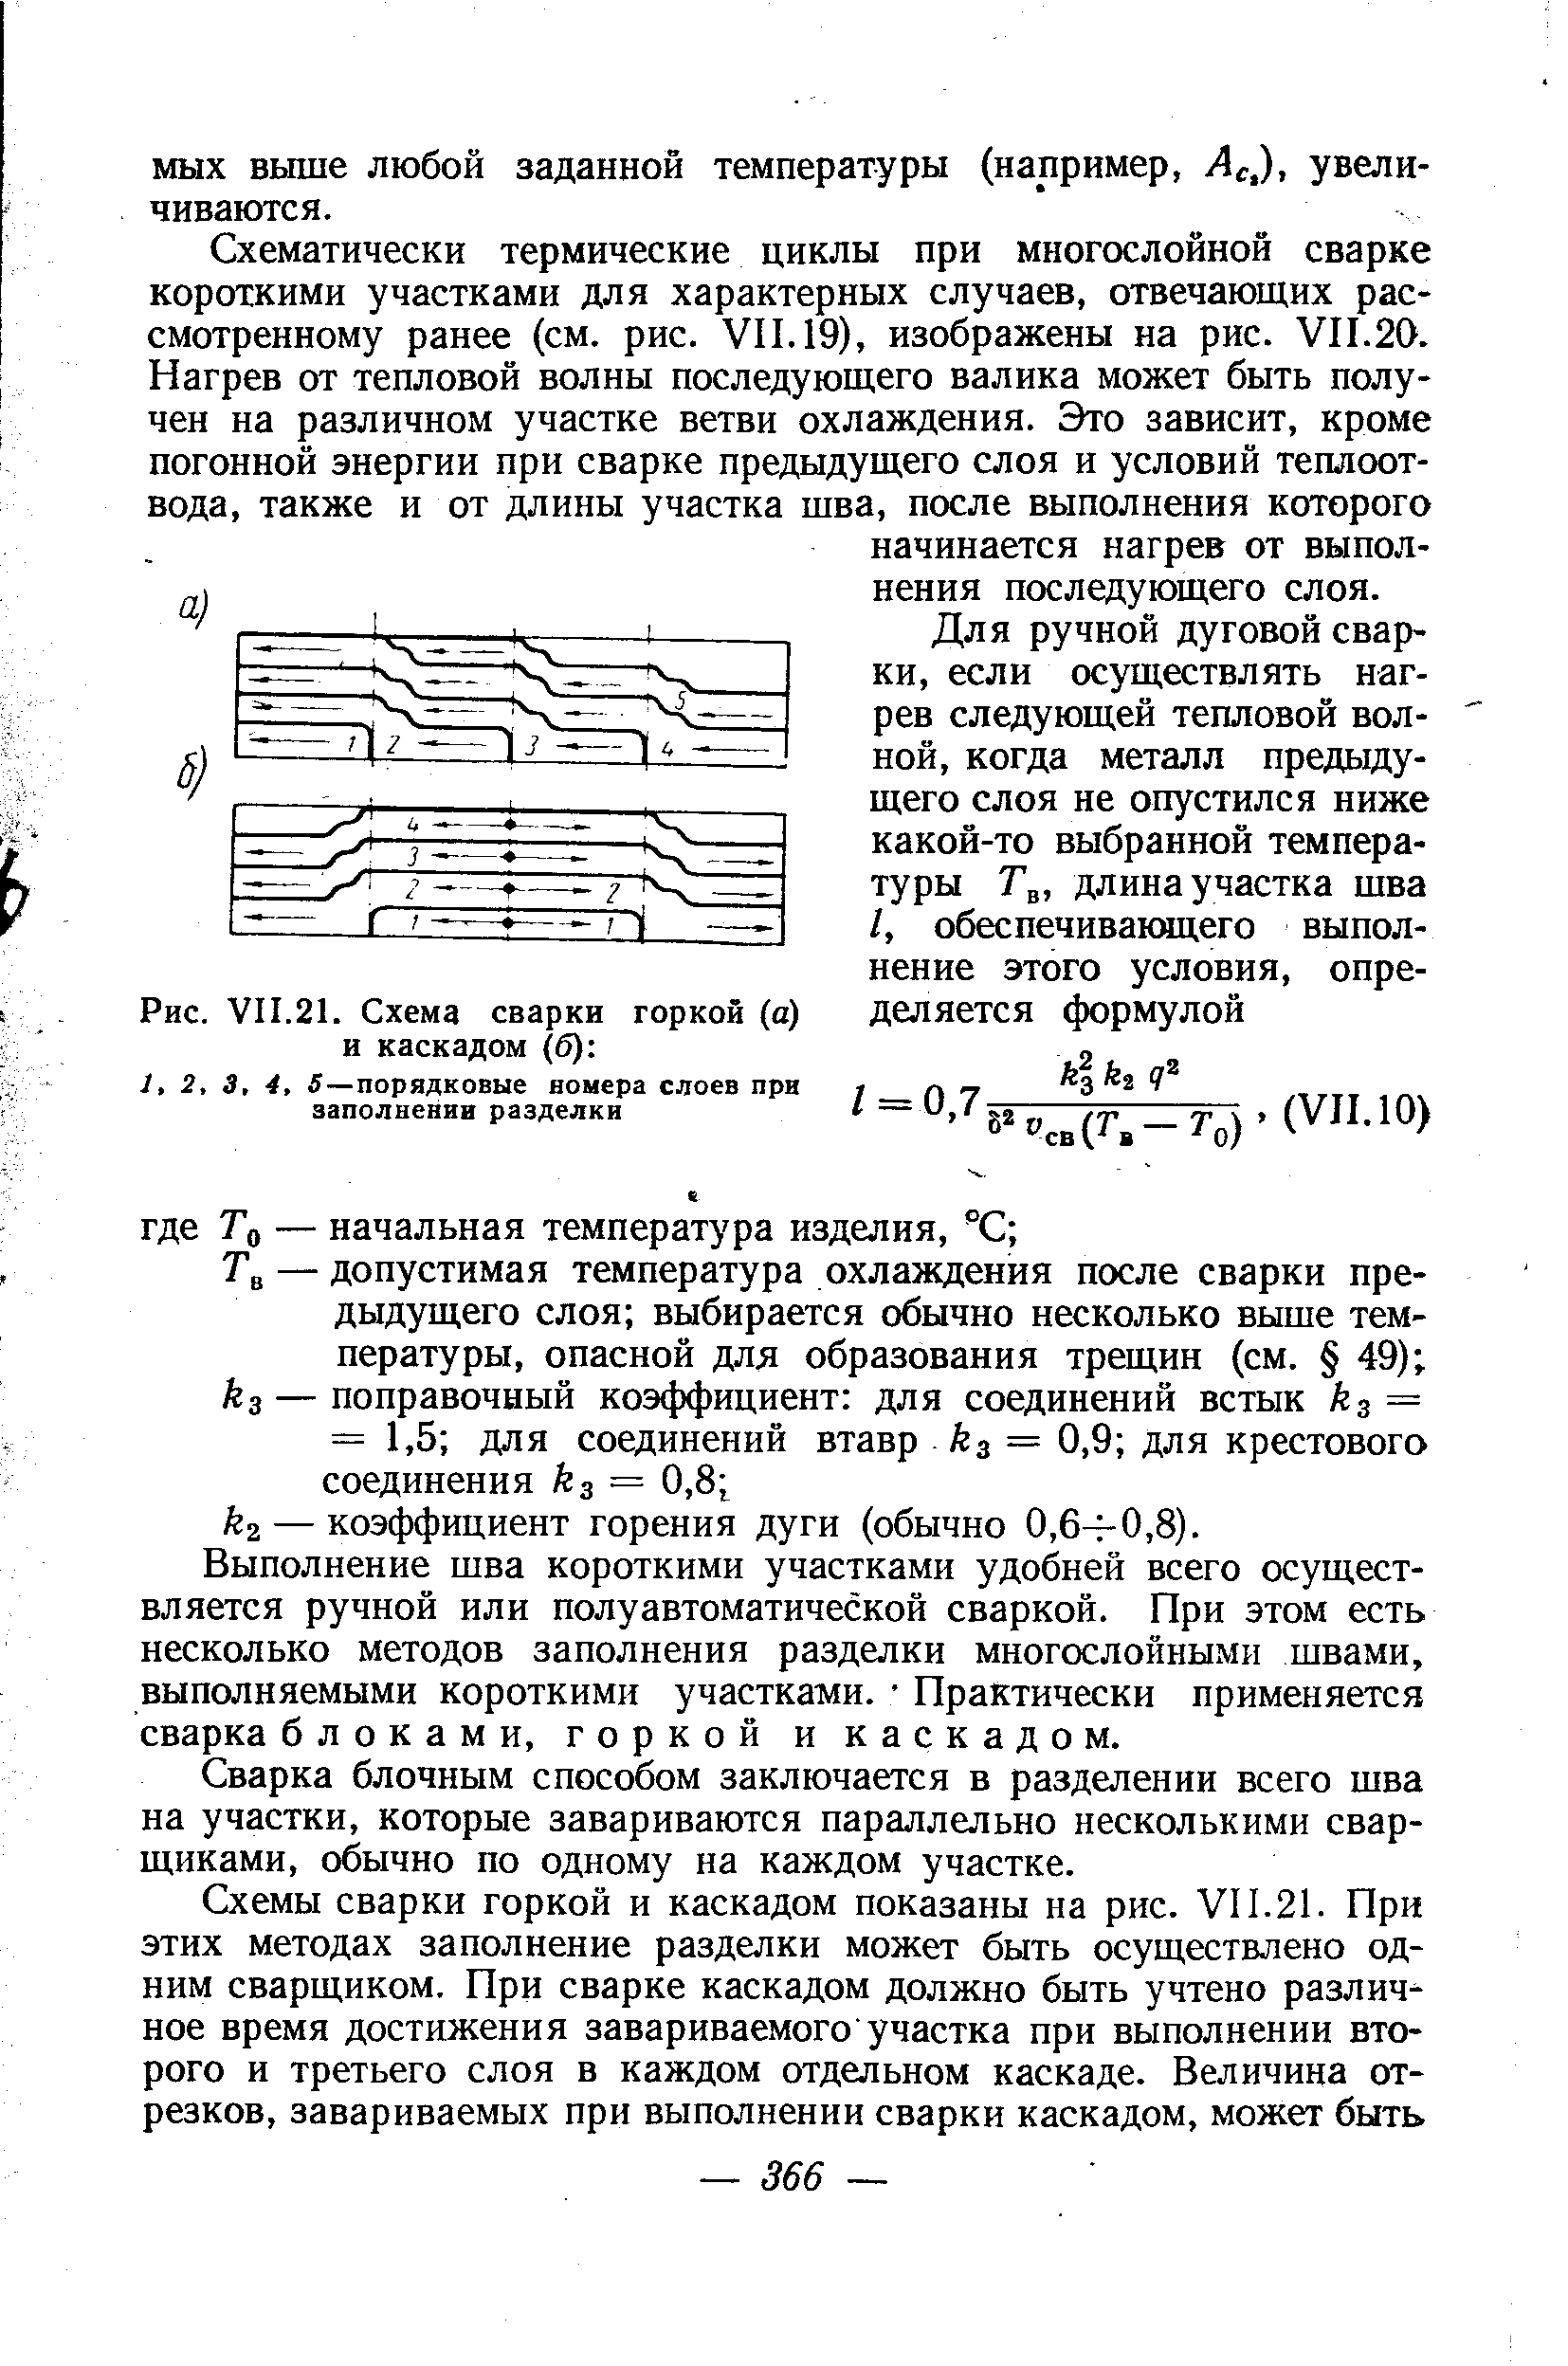 Рис. VII.21. Схема сварки горкой (а) и каскадом (б) 
